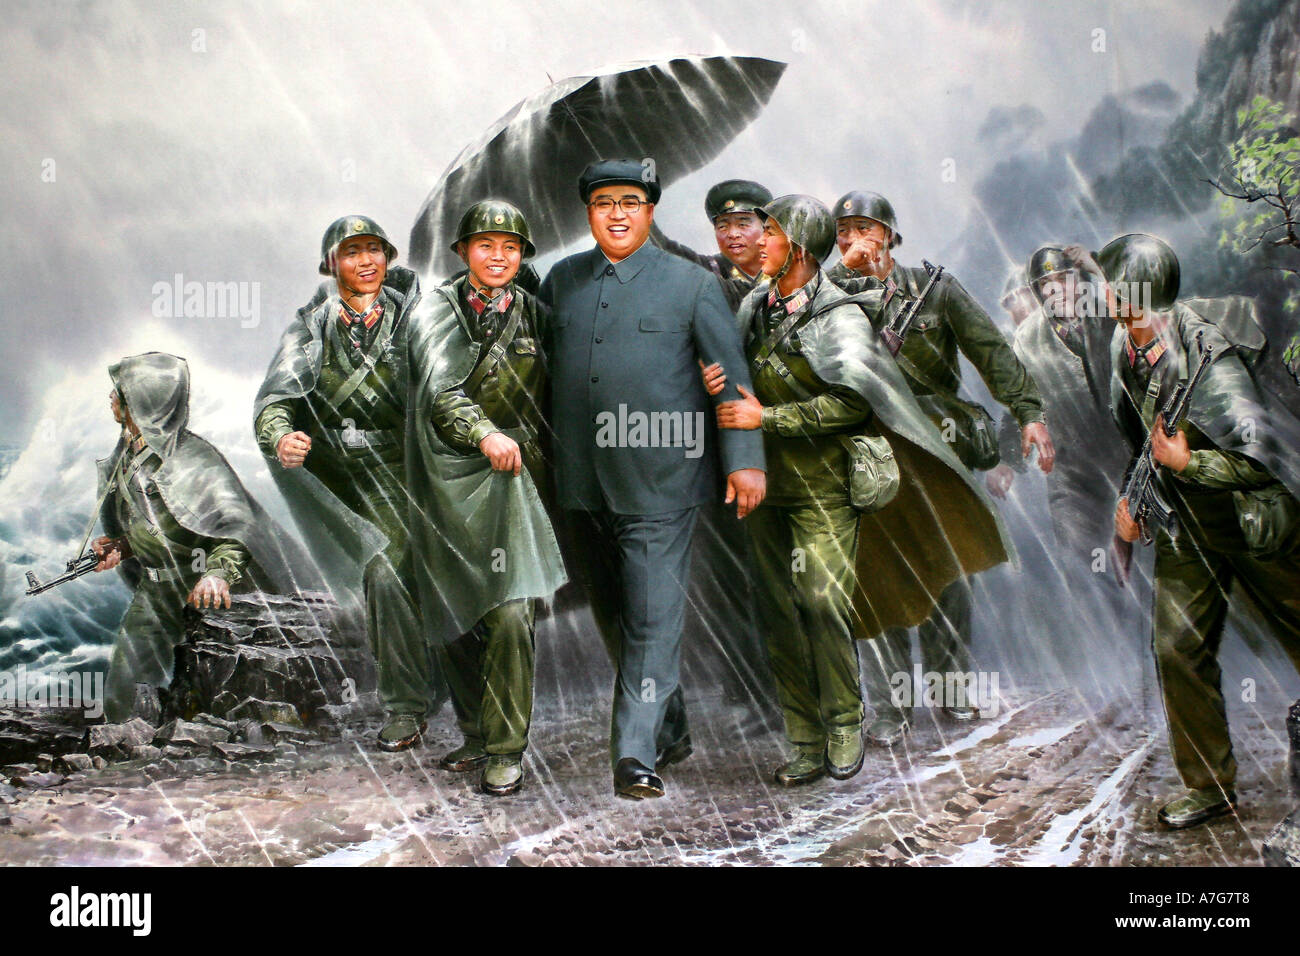 La pittura in arte coreana museo del leader Kim Jong Il visitando le sue truppe Foto Stock